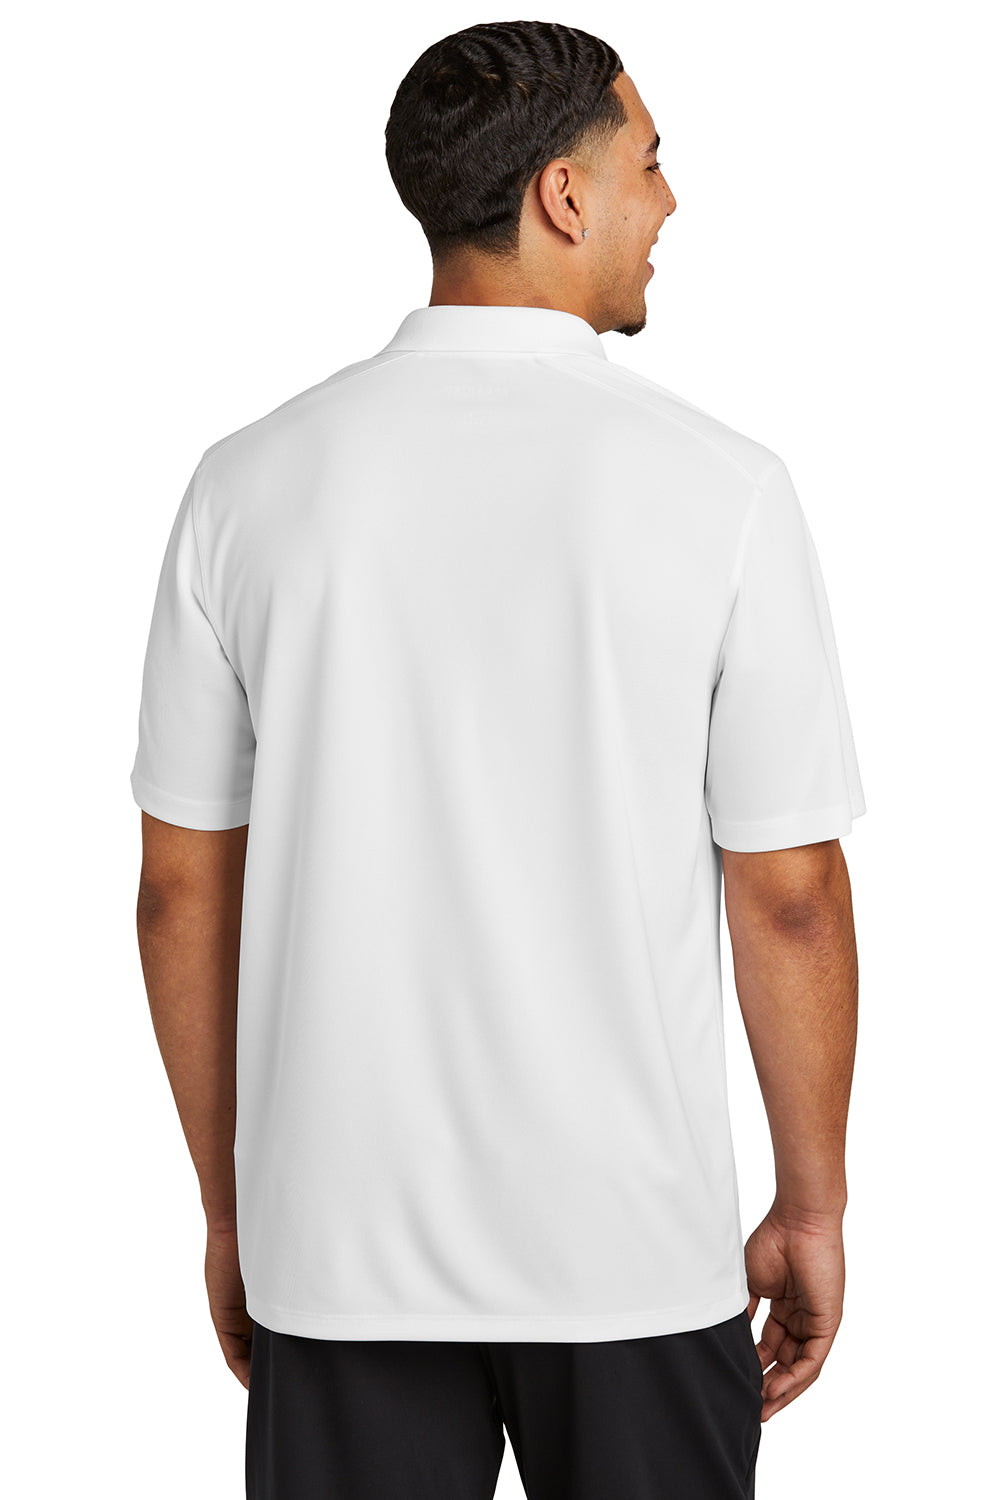 Sport-Tek ST740 Mens UV Micropique Short Sleeve Polo Shirt White Back